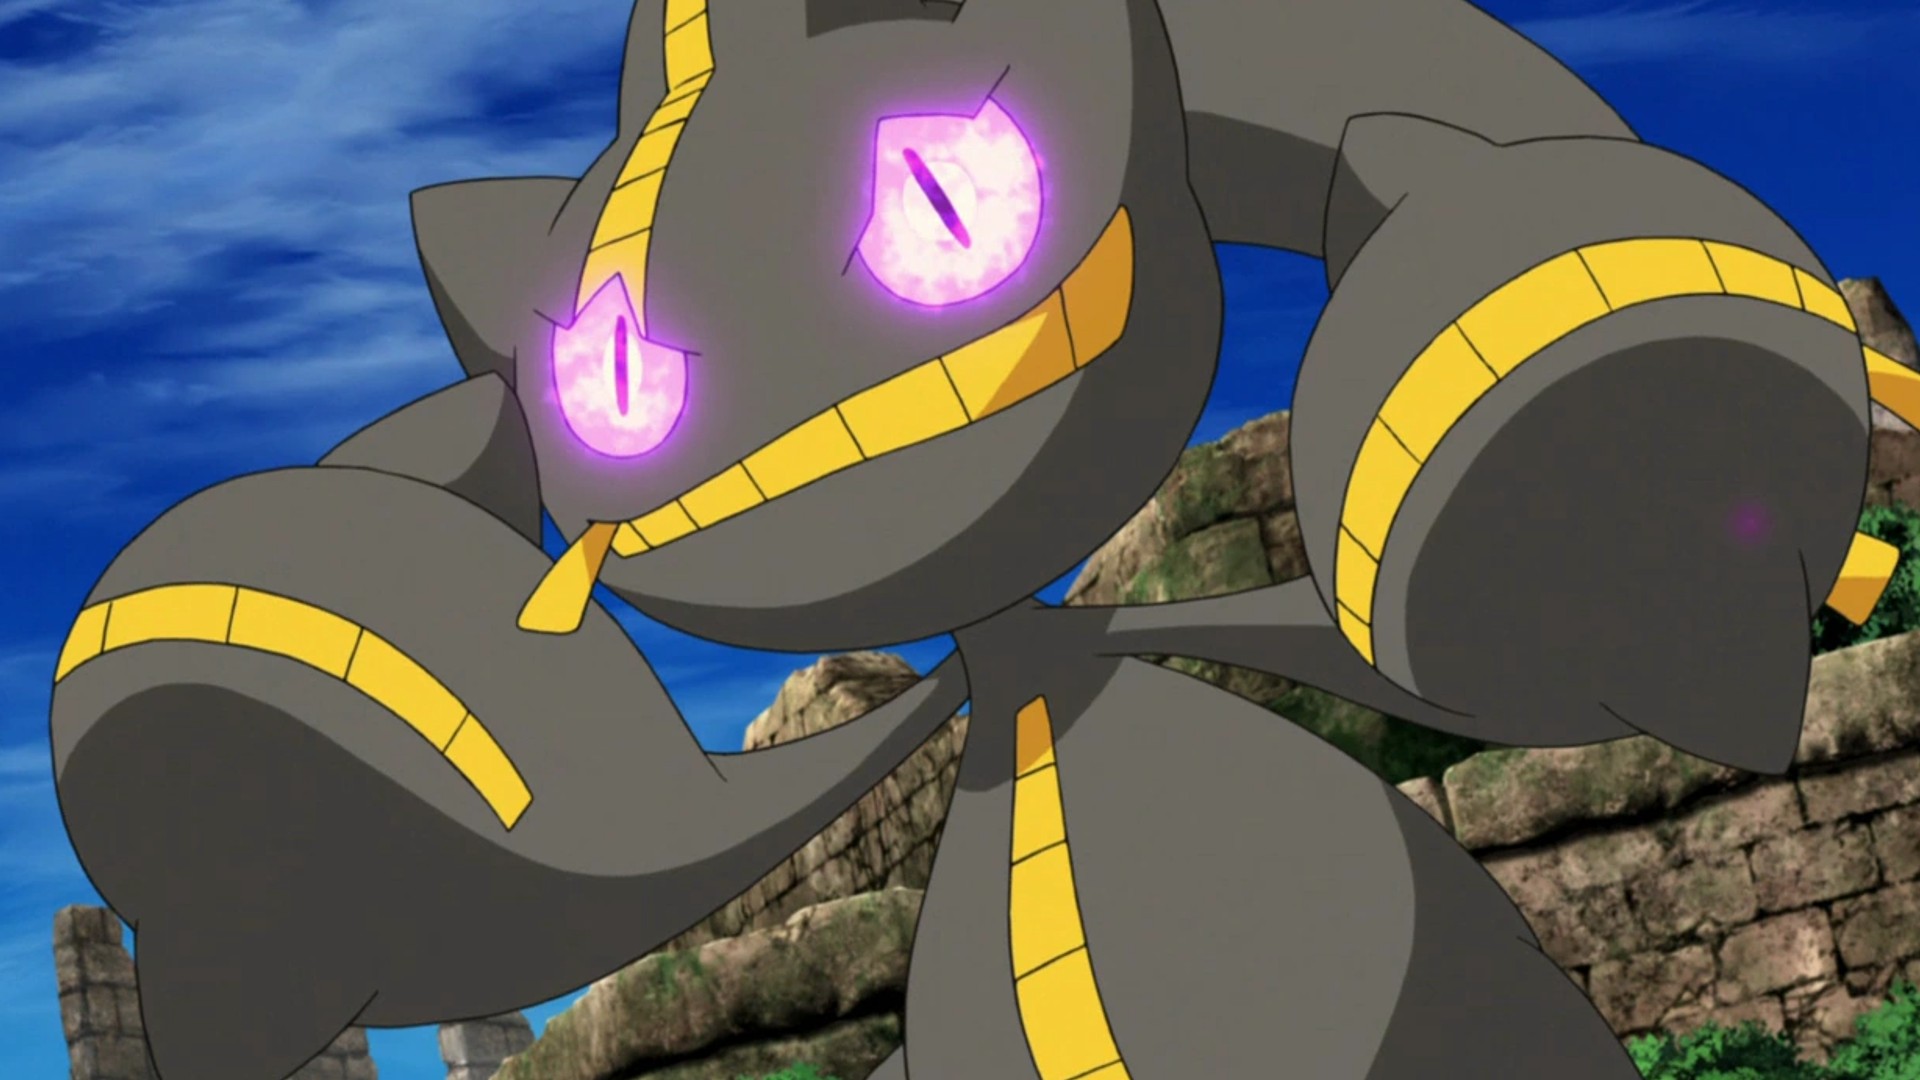 Pokemon Go Mega Banette Raid counters and more